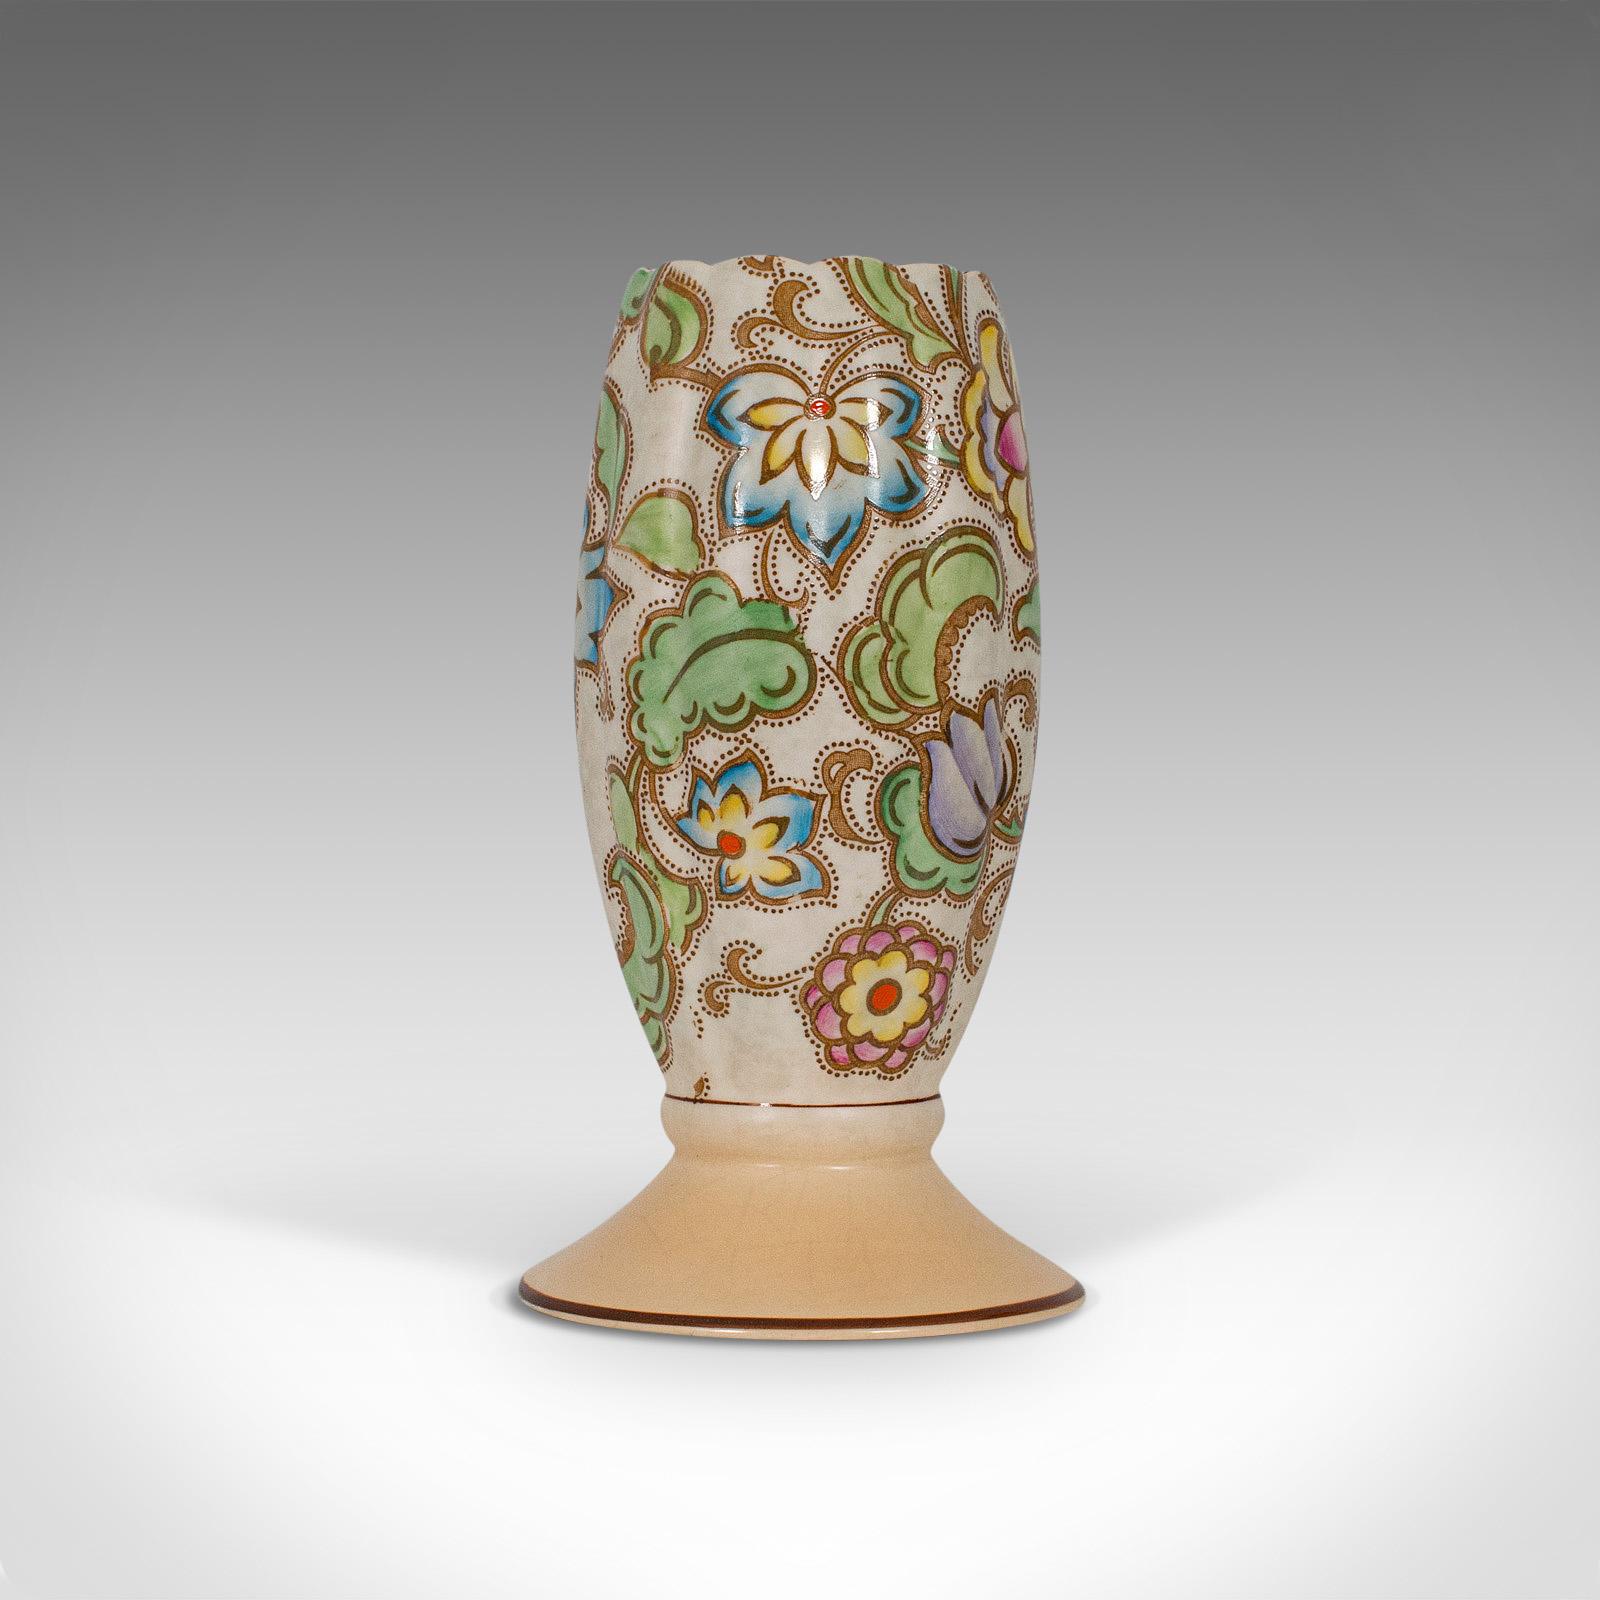 Il s'agit d'un petit vase à fleurs vintage. Une urne à gobelet en céramique anglaise, dans le goût Art Déco, datant du milieu du 20e siècle, vers 1940.

Charmante et inhabituelle forme de gobelet
Affiche une patine vieillie souhaitable
Céramique